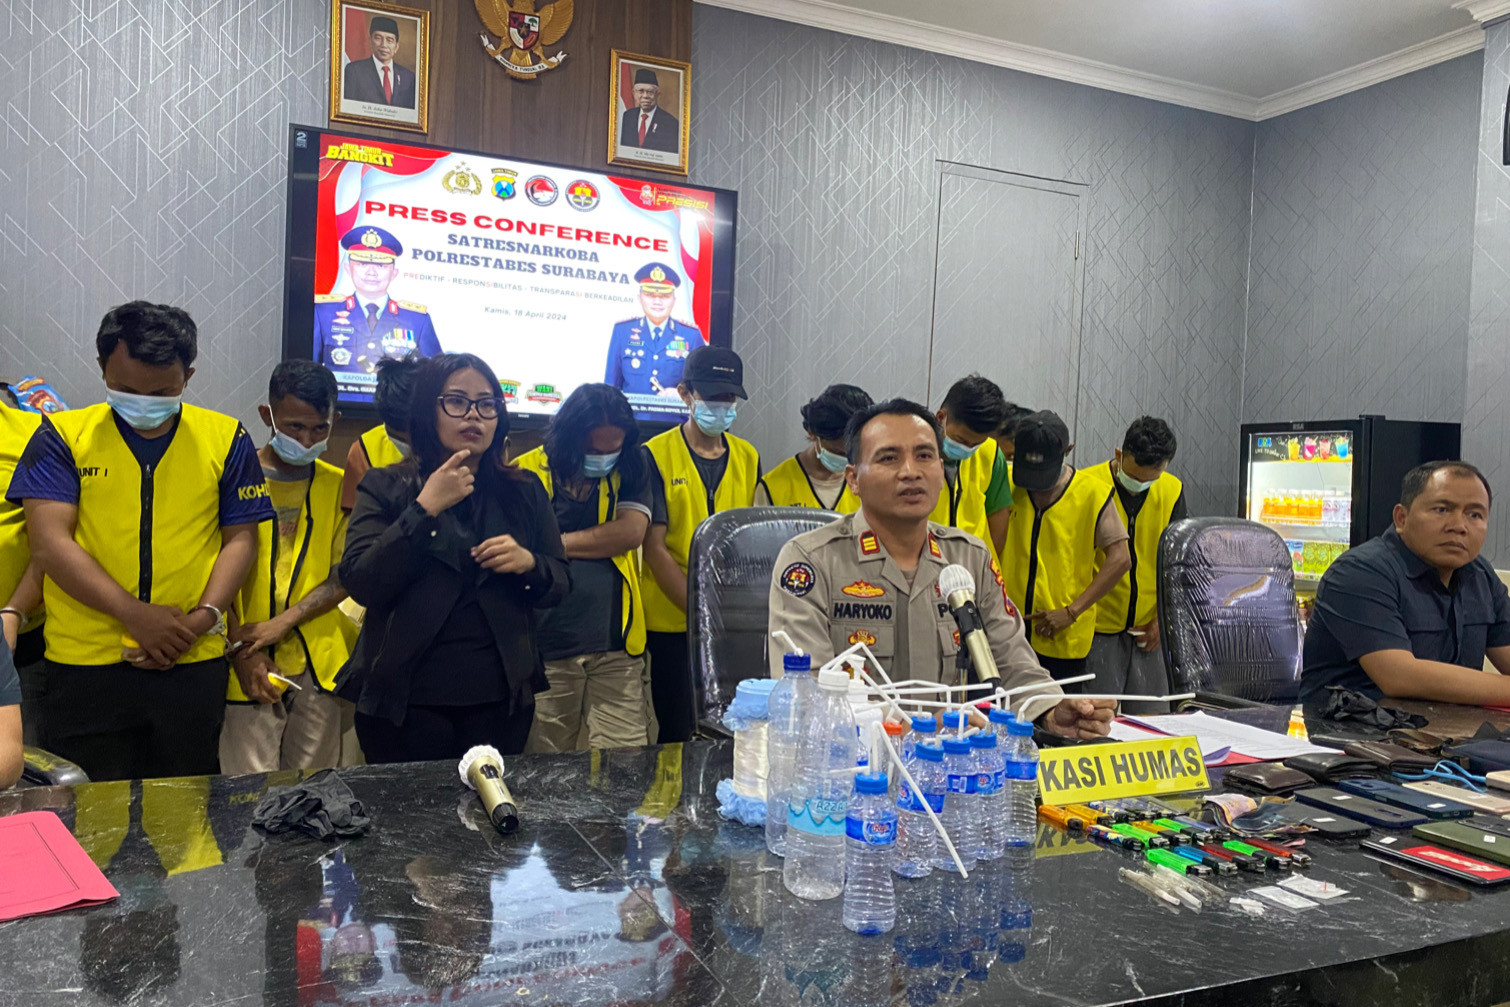 Polisi Gerebek Lokasi Pesta Sabu-Sabu di Surabaya, Amankan 11 Orang - JPNN.com Jatim